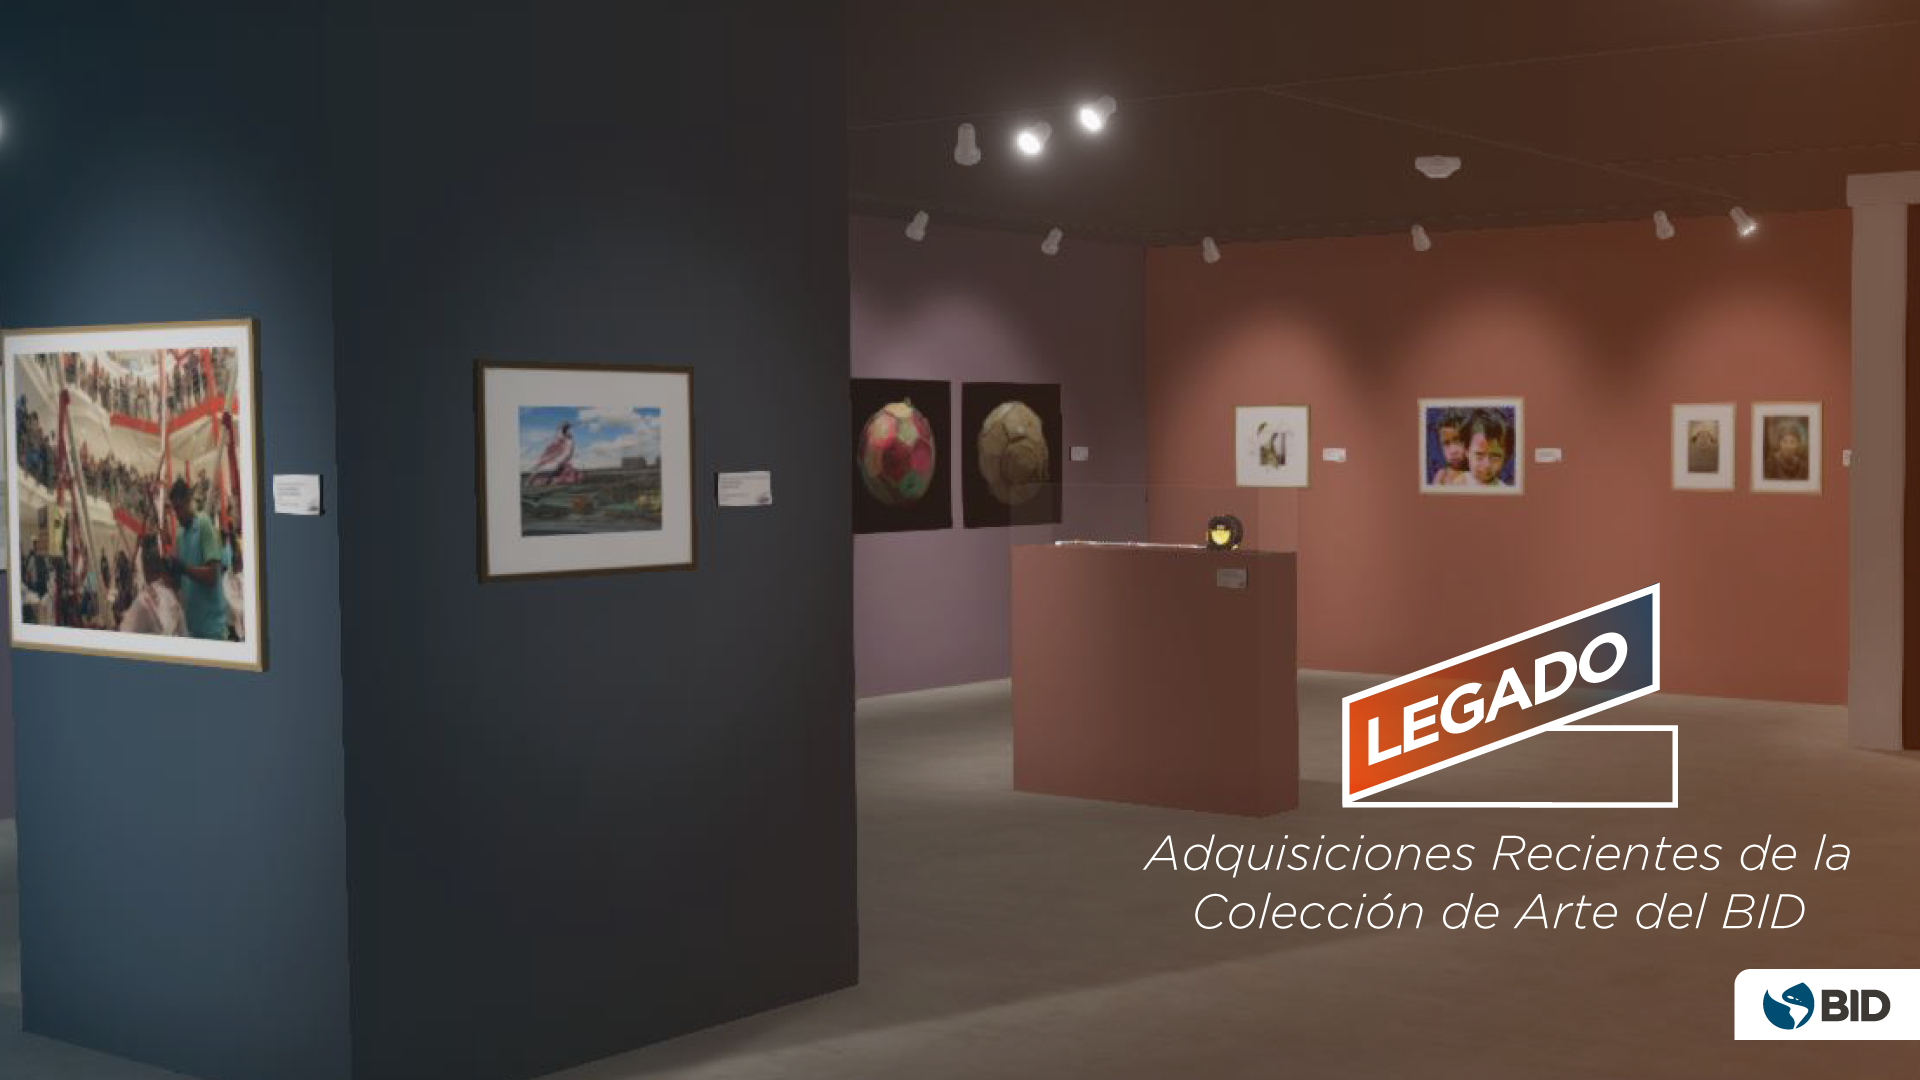 Legado, Adquisiciones Recientes de la Colección de Arte del BID